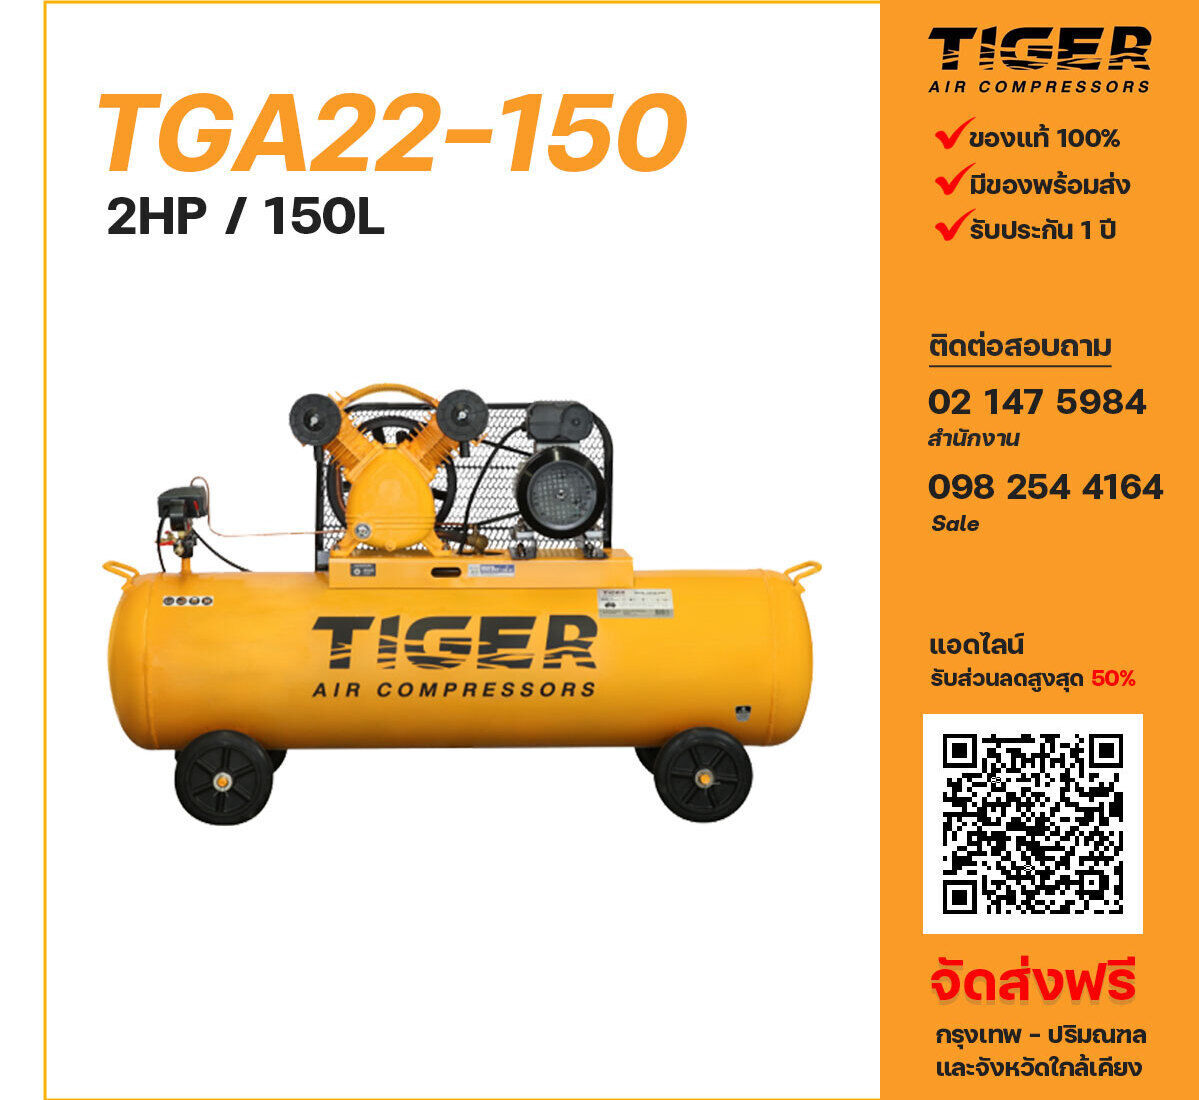 ปั๊มลมไทเกอร์ TIGER TGA22-150 220V ปั๊มลมลูกสูบ ขนาด 2 สูบ 2 แรงม้า 150 ลิตร TIGER พร้อมมอเตอร์ ไฟ 220V ส่งฟรี กรุงเทพฯ-ปริมณฑล รับประกัน 1 ปี